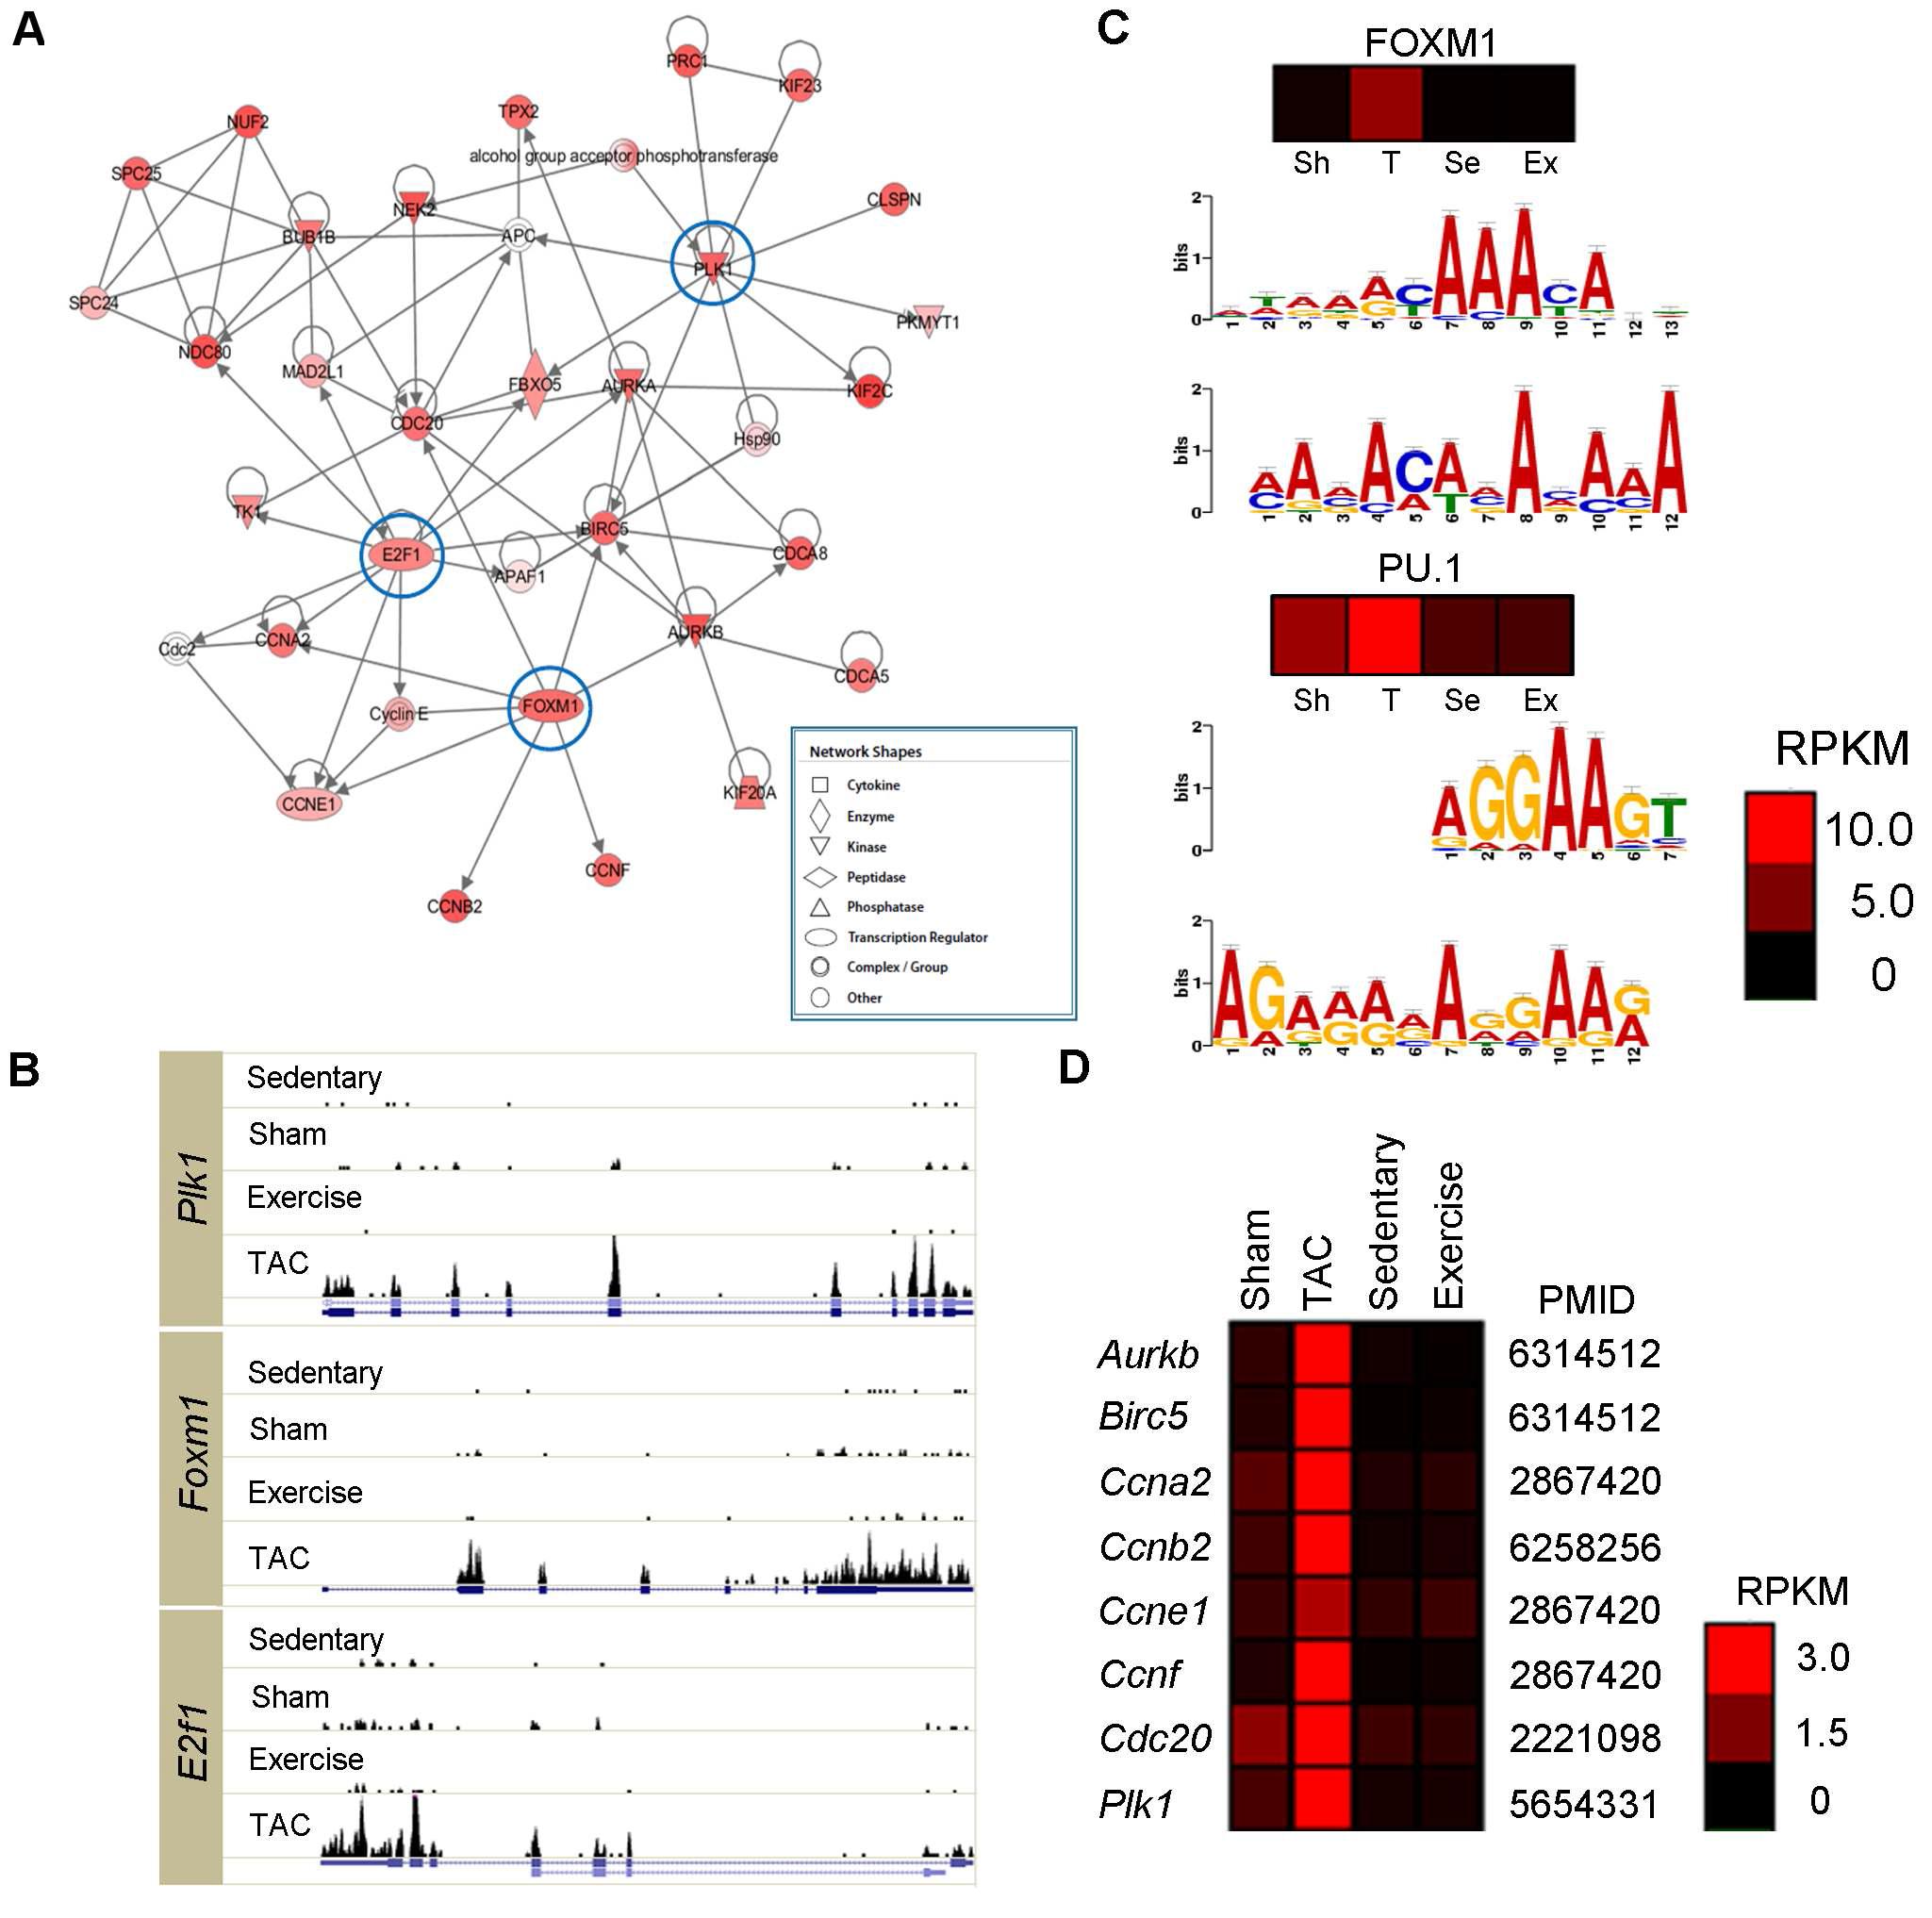 병리학적 심근비대 특이적인 417개 유전자 분석 (A) Ingenuity Pathway Analysis로 분석한 유전자 네트워크 (B) 각 모델에서의 허브 유전자인 Plk1, Foxm1, E2F1의 발현 히스토그램 (C) 해당 유전자의 upstream 1,000에 많이 존재하는 motif 예측 (D) Foxm1의 알려진 타겟 유전자들의 발현 패턴